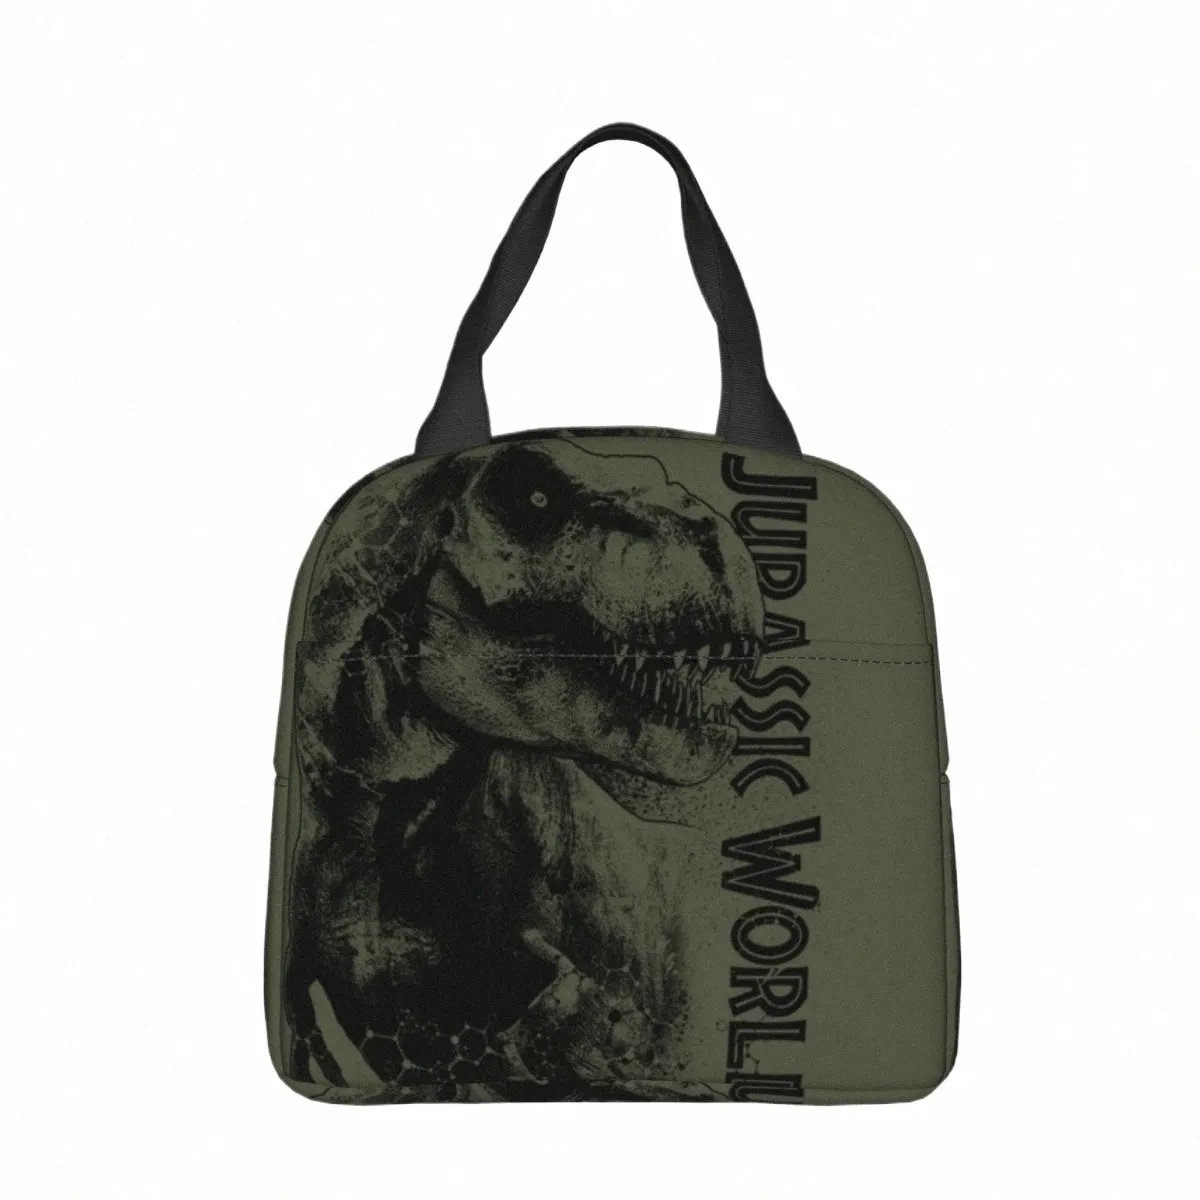 Jurassic Park On The Prowl Sac à lunch isolé étanche réutilisable sac isotherme fourre-tout boîte à lunch plage pique-nique hommes femmes w9rU #